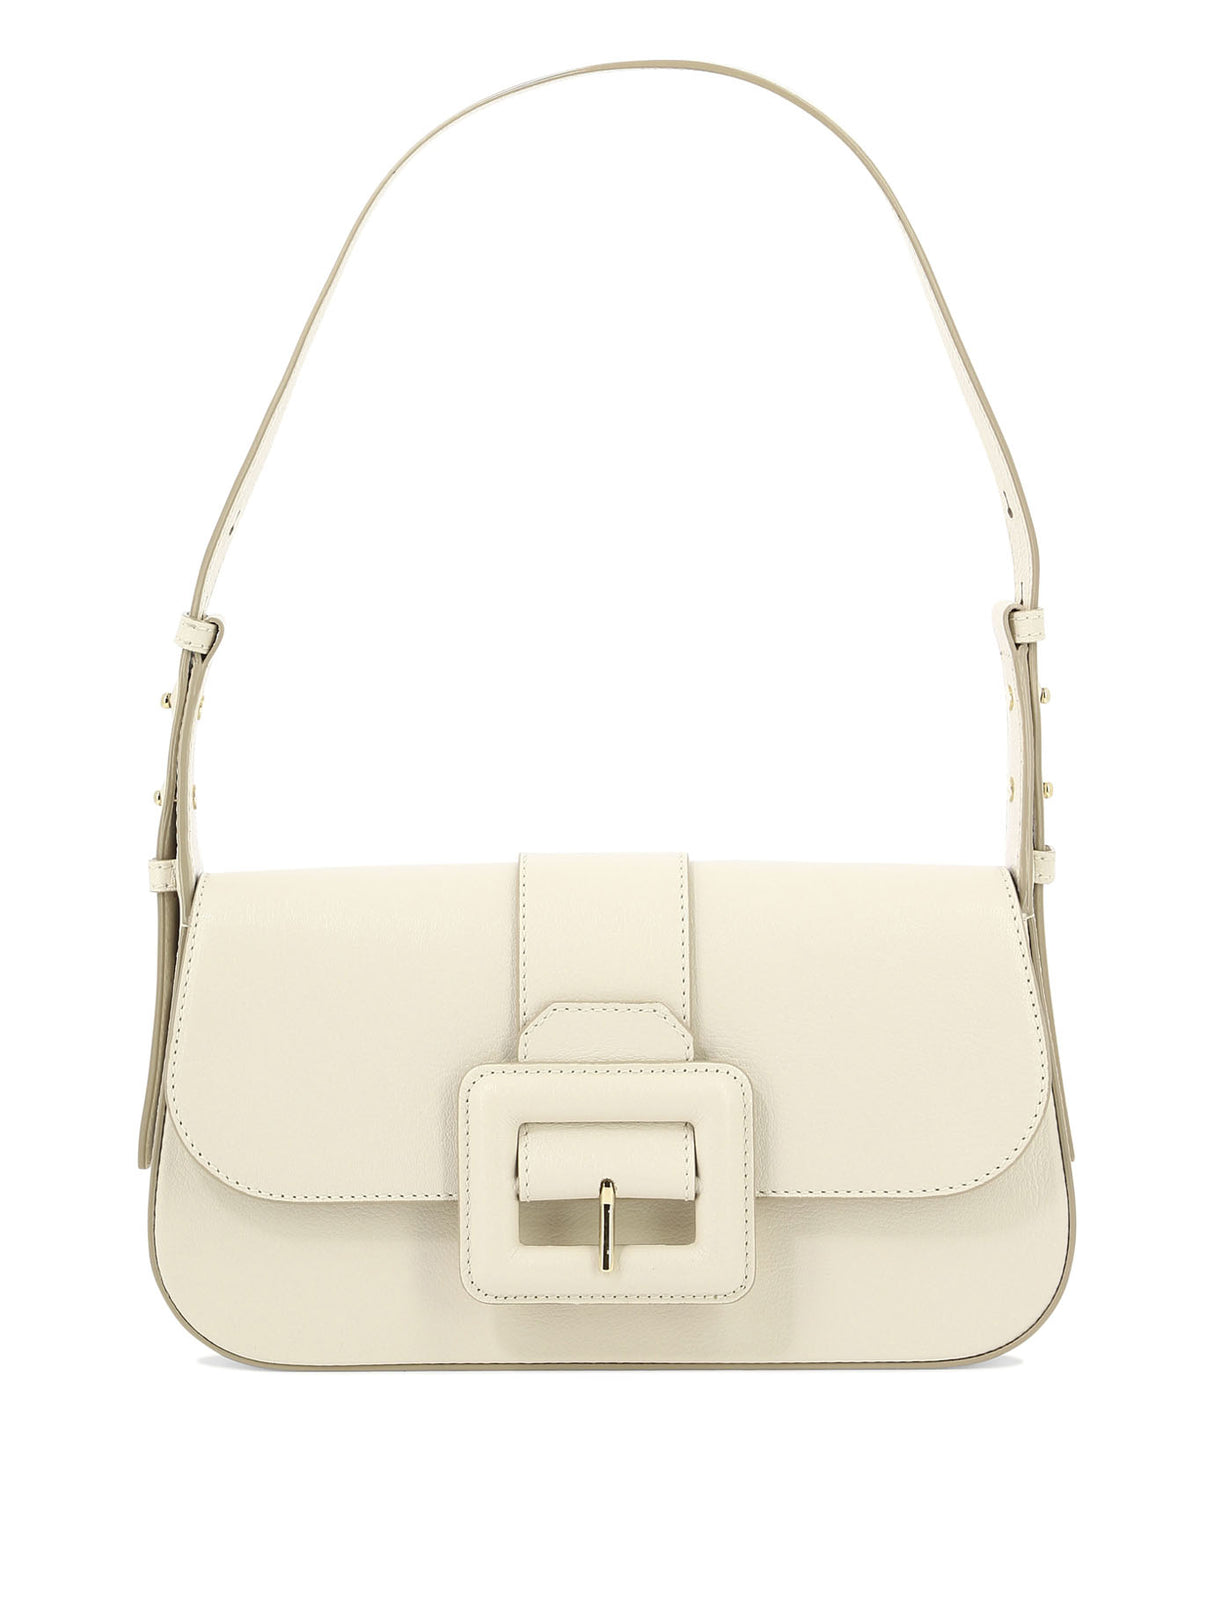 BALLY White Shoulder Handbag for Women - SS23 Collection